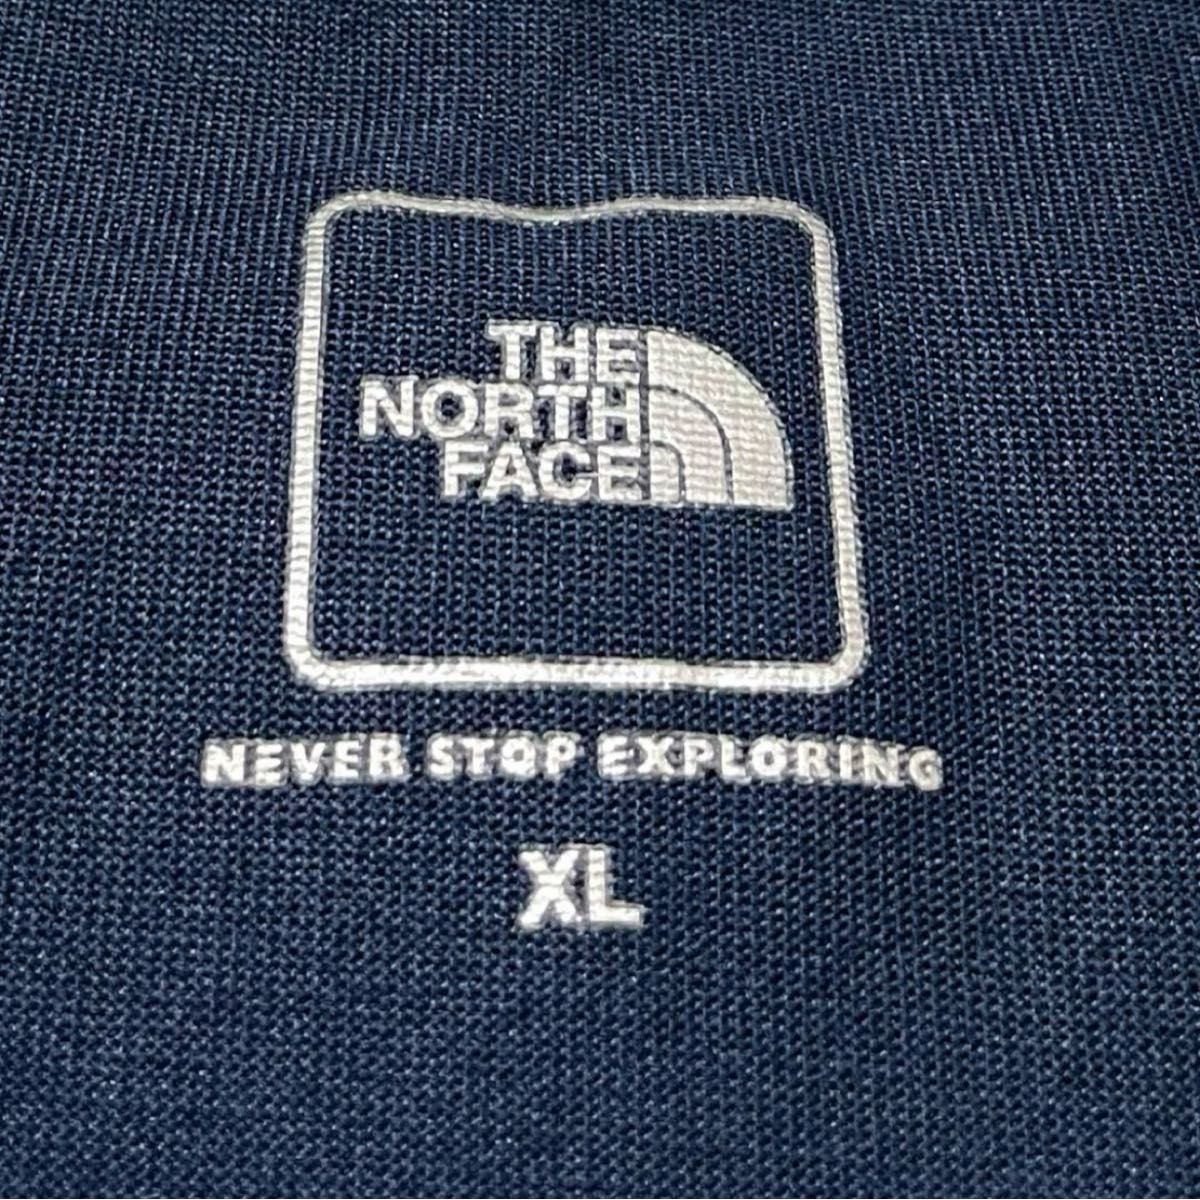 ノースフェイス tシャツ 美品 カラー ドーム NT32034 ネイビー XL THE NORTH FACE 半袖Tシャツ XL